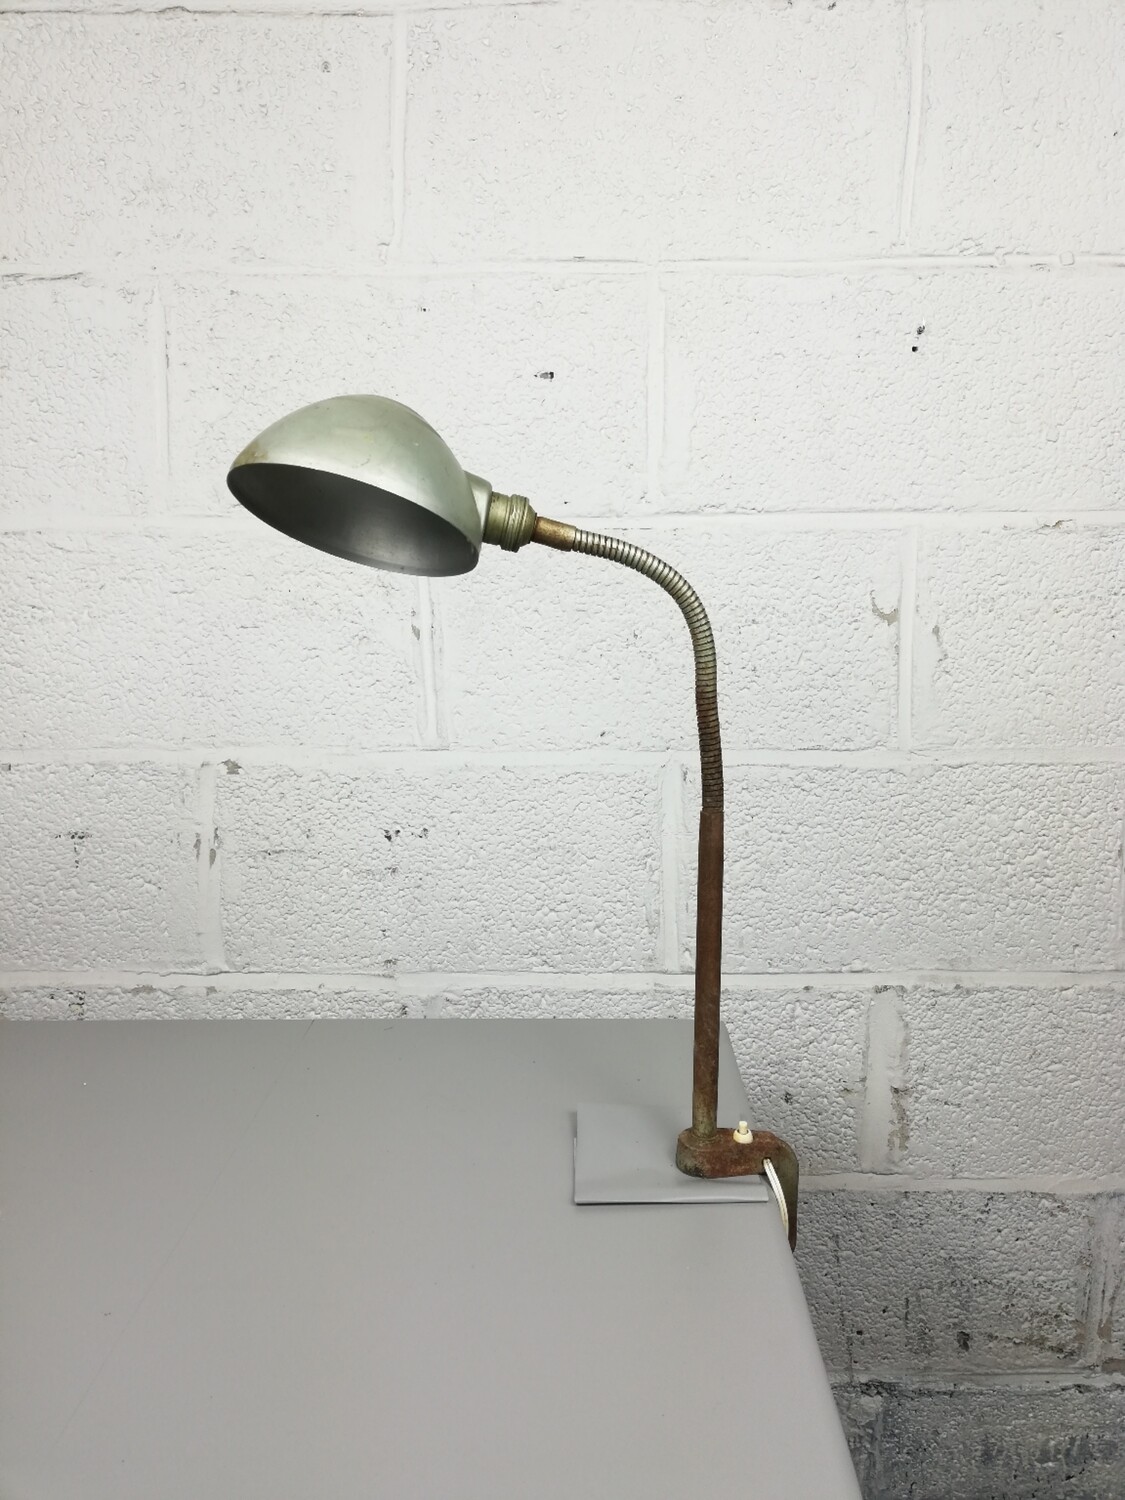 workshop lamp / clamp lamp